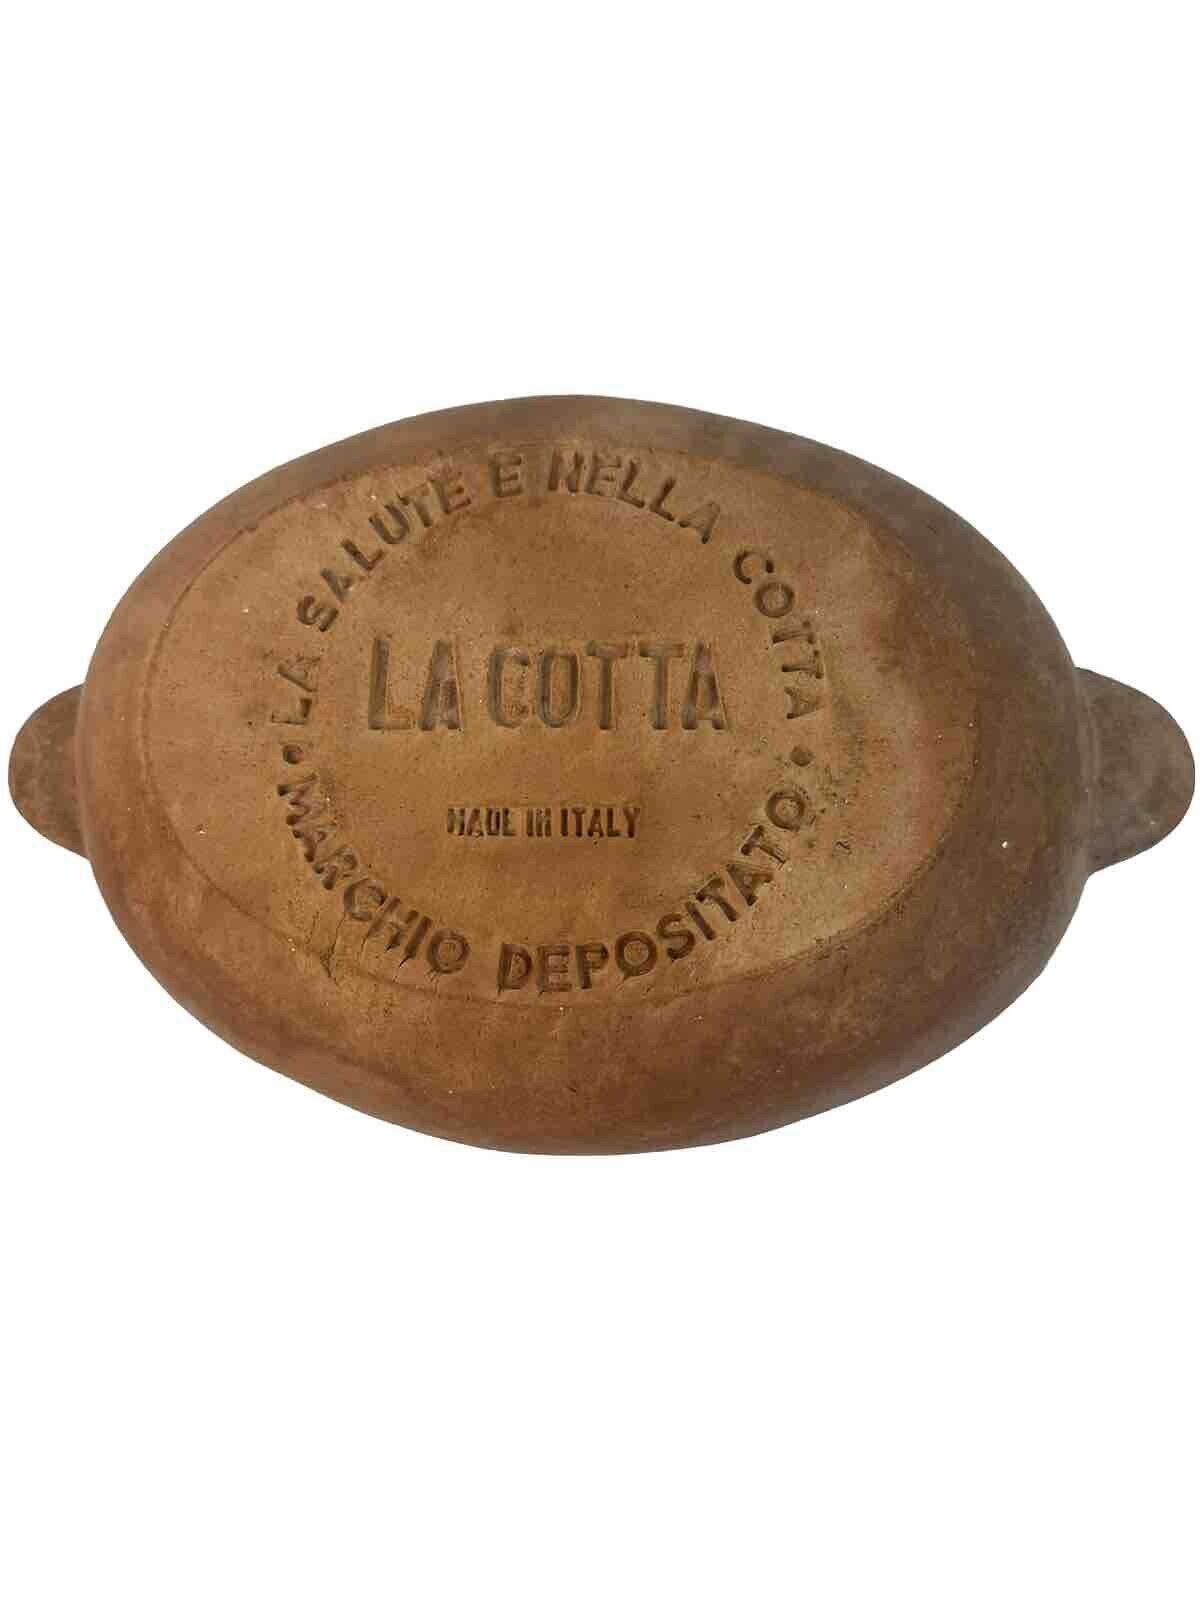 LA COTTA Oval Pot made in Italy la salute e Nella Cotta Clay Pot Vintage